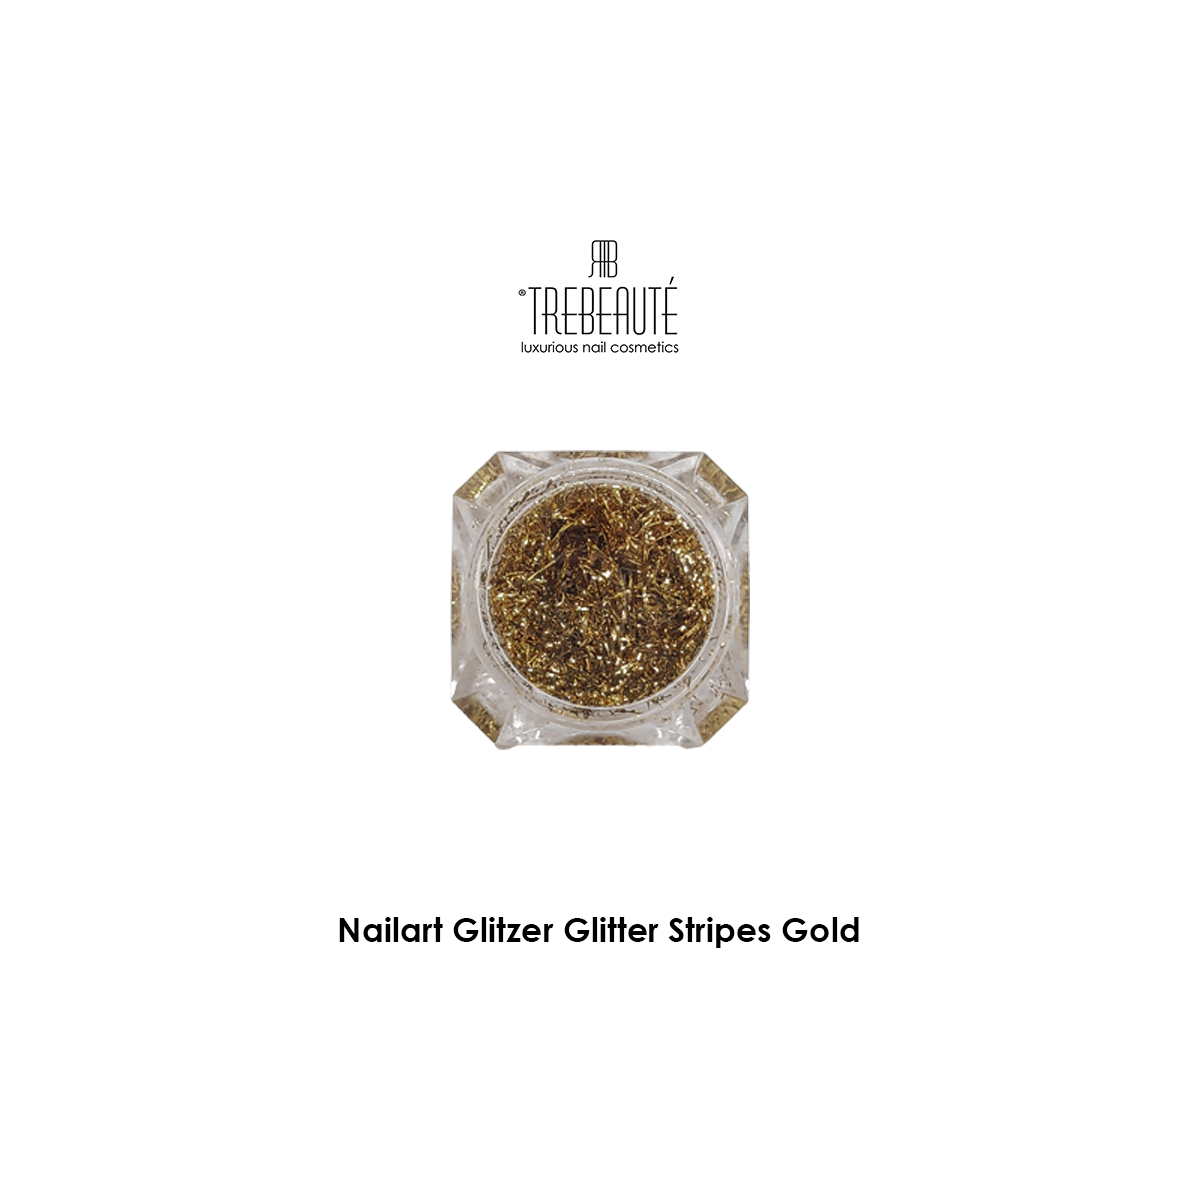 Nailart Glitzer Glitter Stripes-Gold